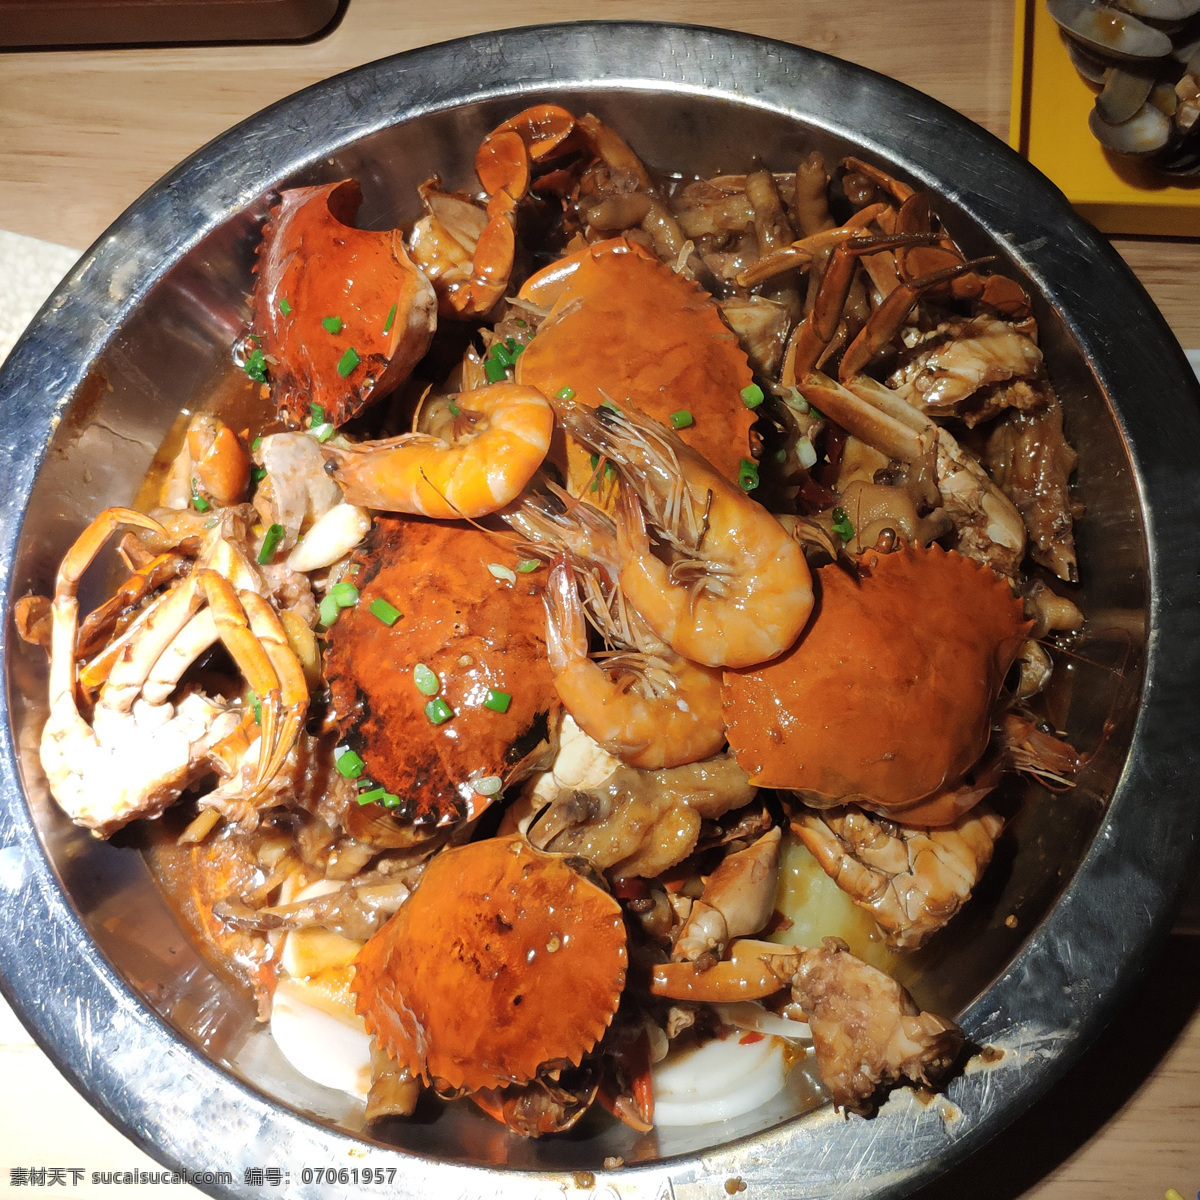 虾兵蟹将 个锅鲜 美食 海鲜 干锅 图片照片 餐饮美食